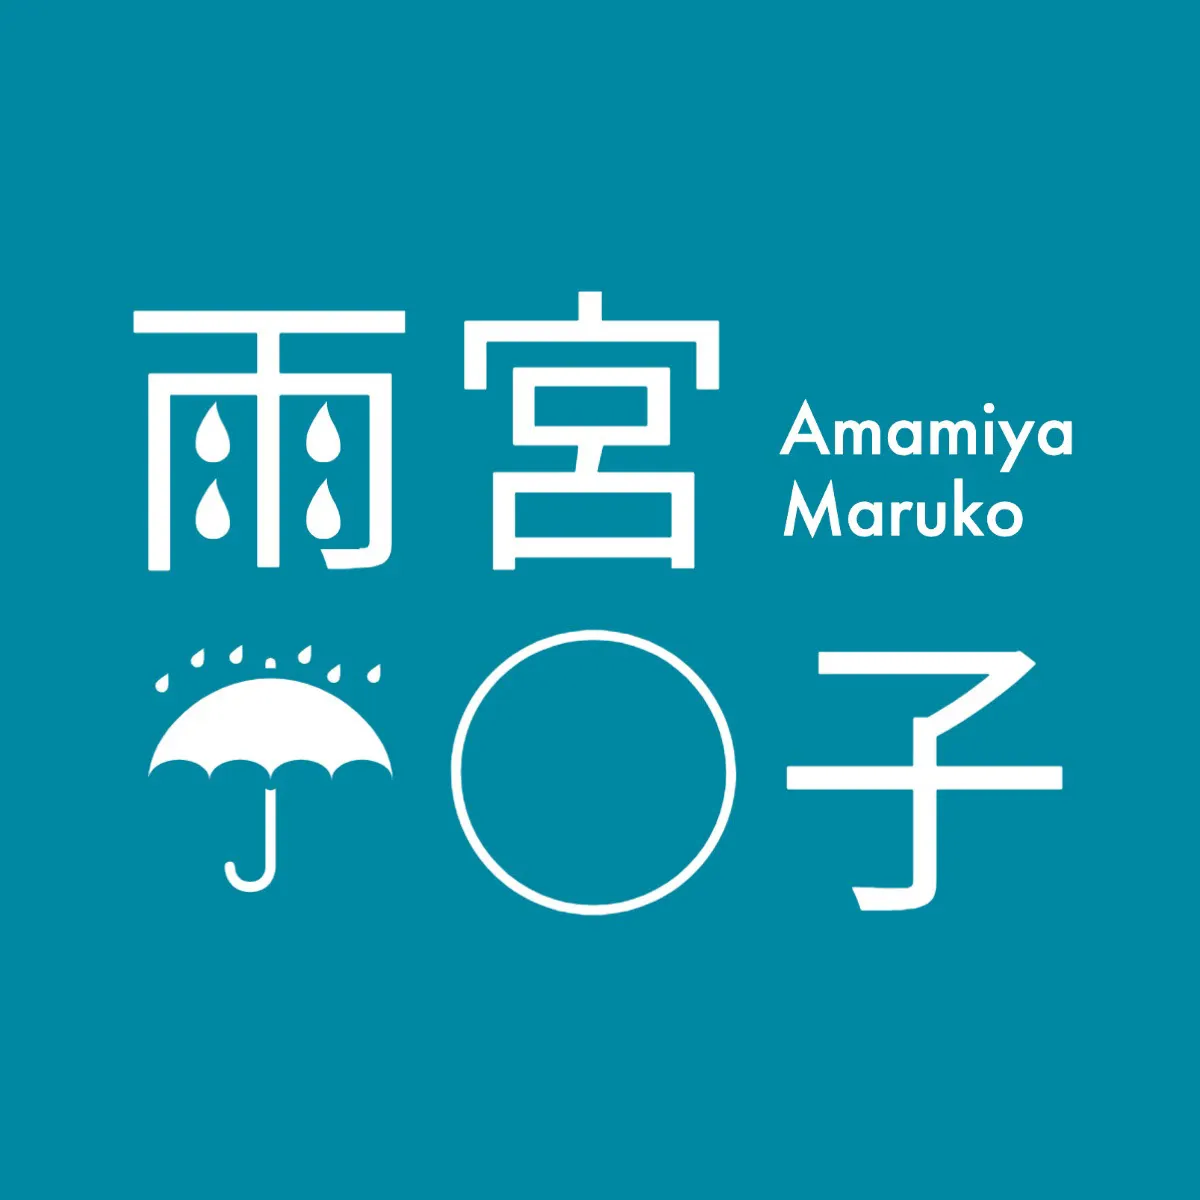 Name logo for Amamiya-san